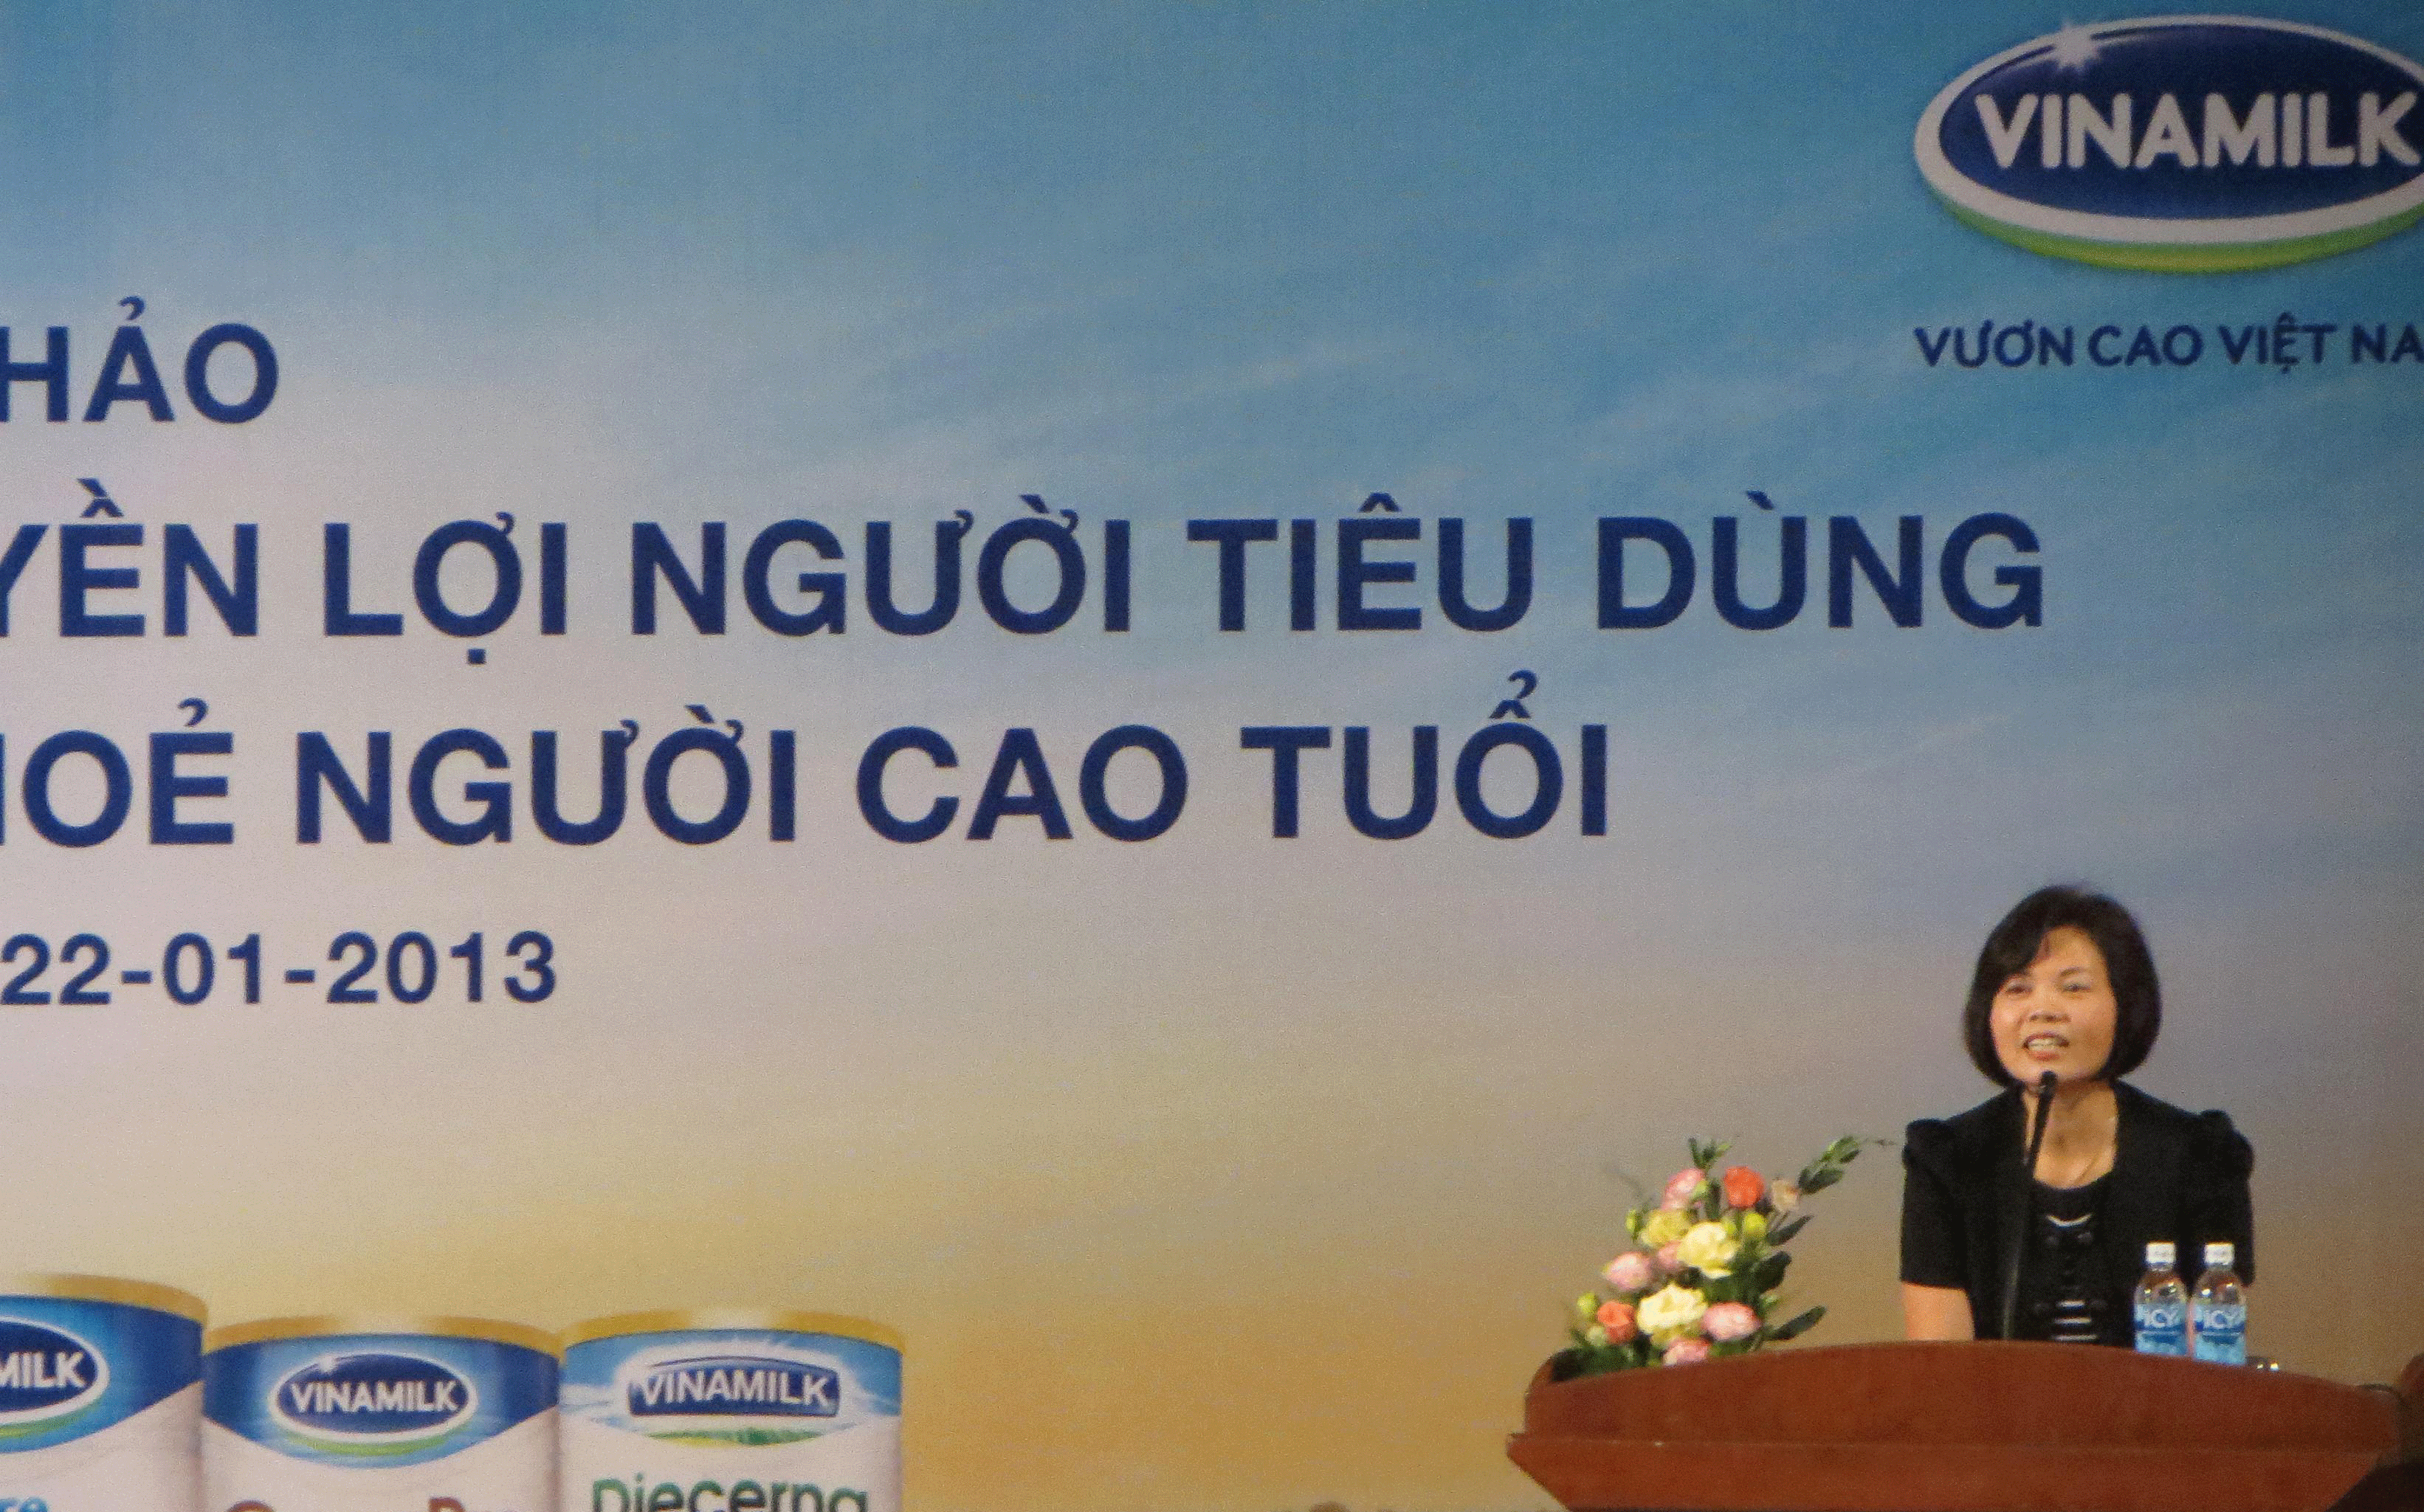 Bà Bùi Thị Hương, Giám đốc Đối ngoại Vinamilk chia sẻ với người tiêu dùng Khánh Hoà về các sản phẩm sữa của công ty.